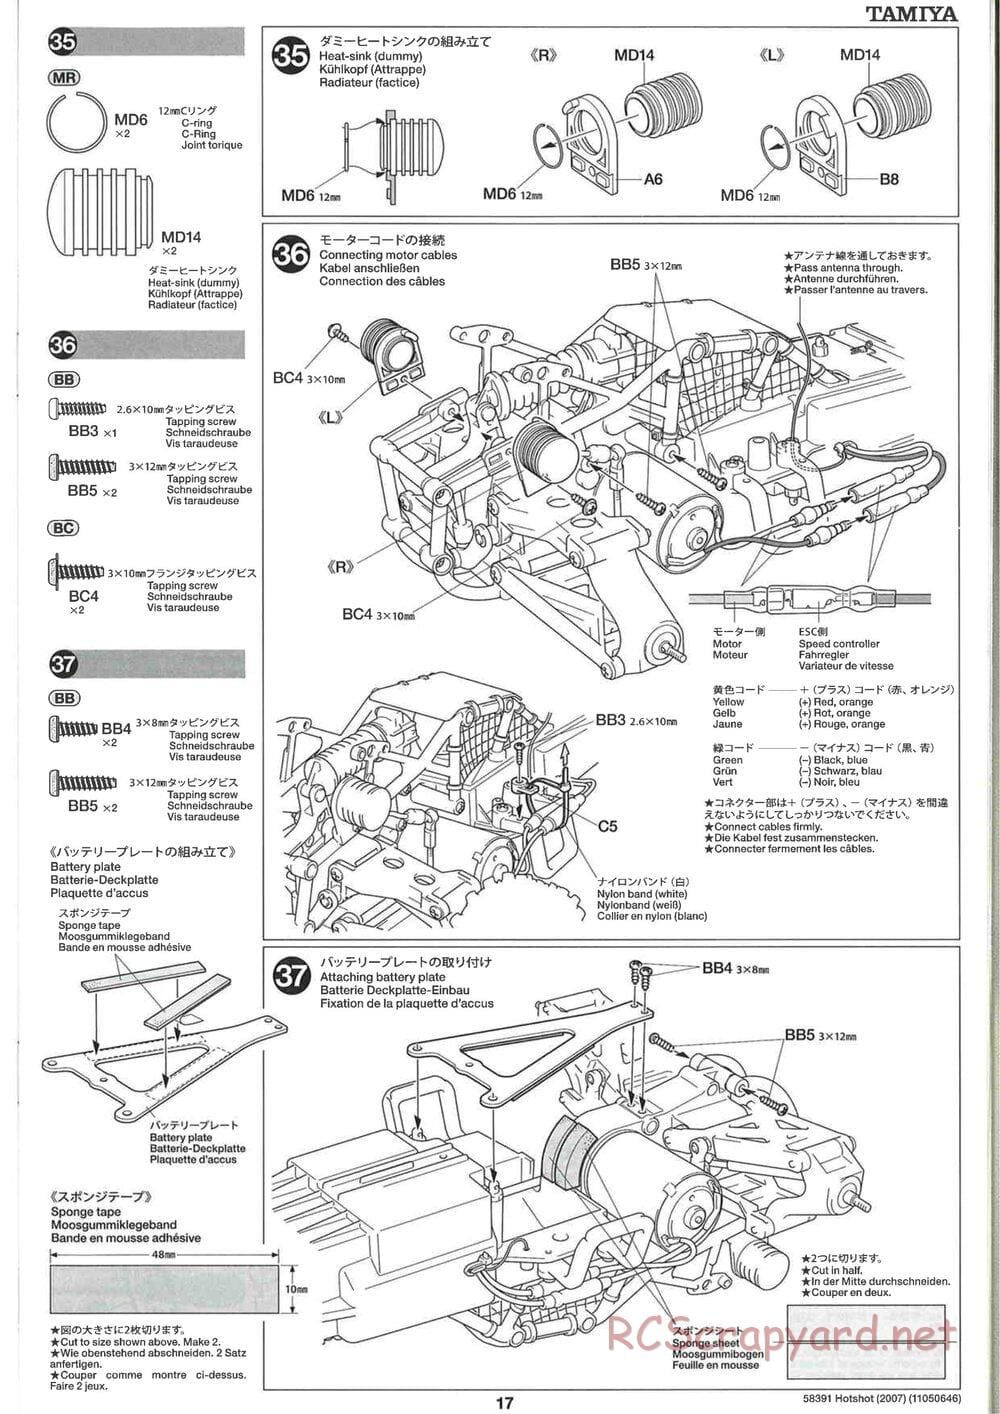 Tamiya - Hotshot - 2007 - HS Chassis - Manual - Page 17